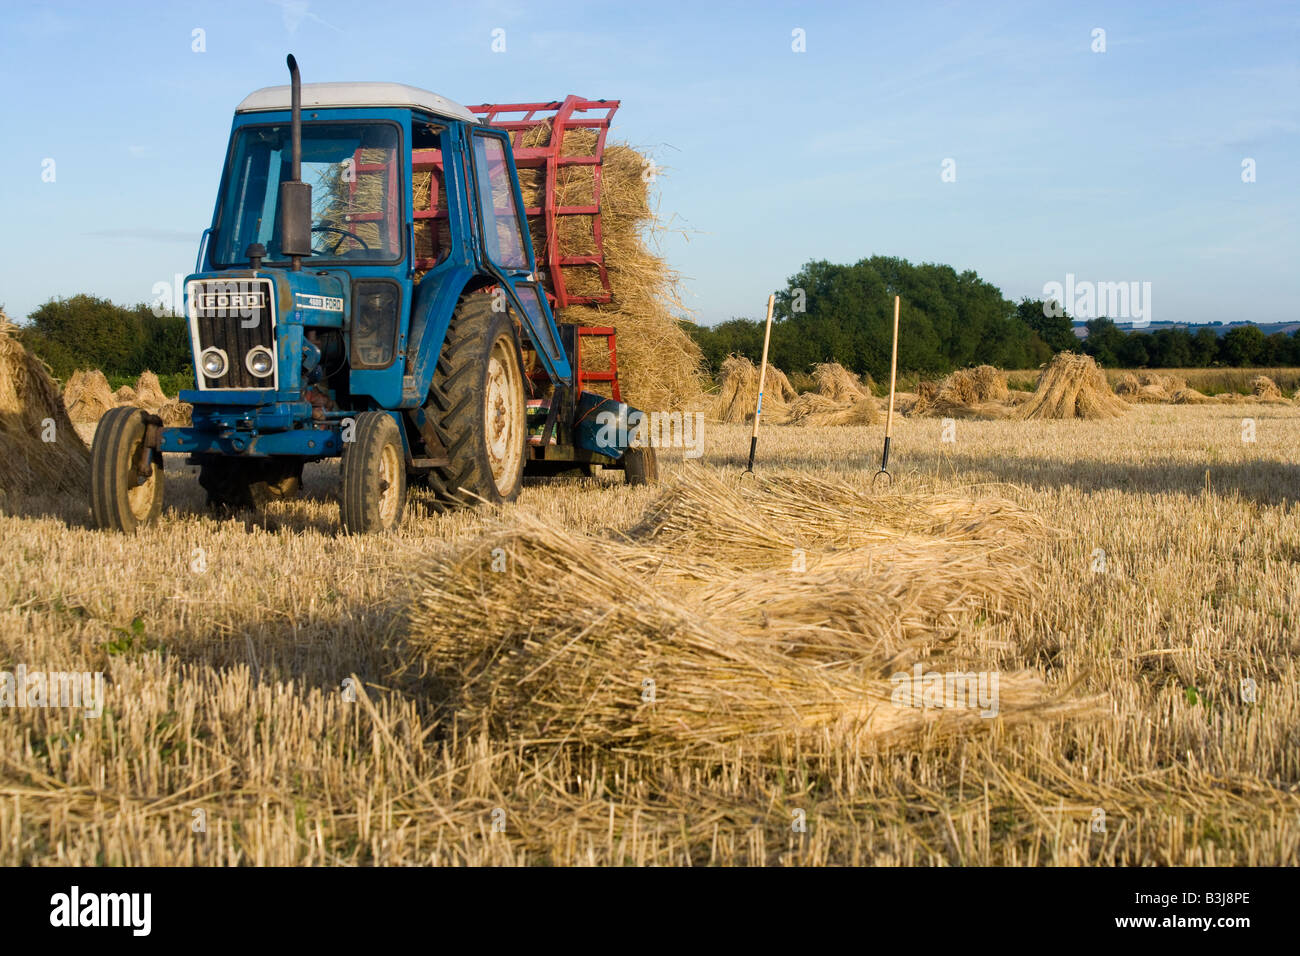 Oxfordshire Weizenfeld mit einem Traktor zum Verschieben der lange stemmed Ernte für thatching verwendet. Stroh wird in Schrankfächern oder Stooks getrocknet. Stockfoto